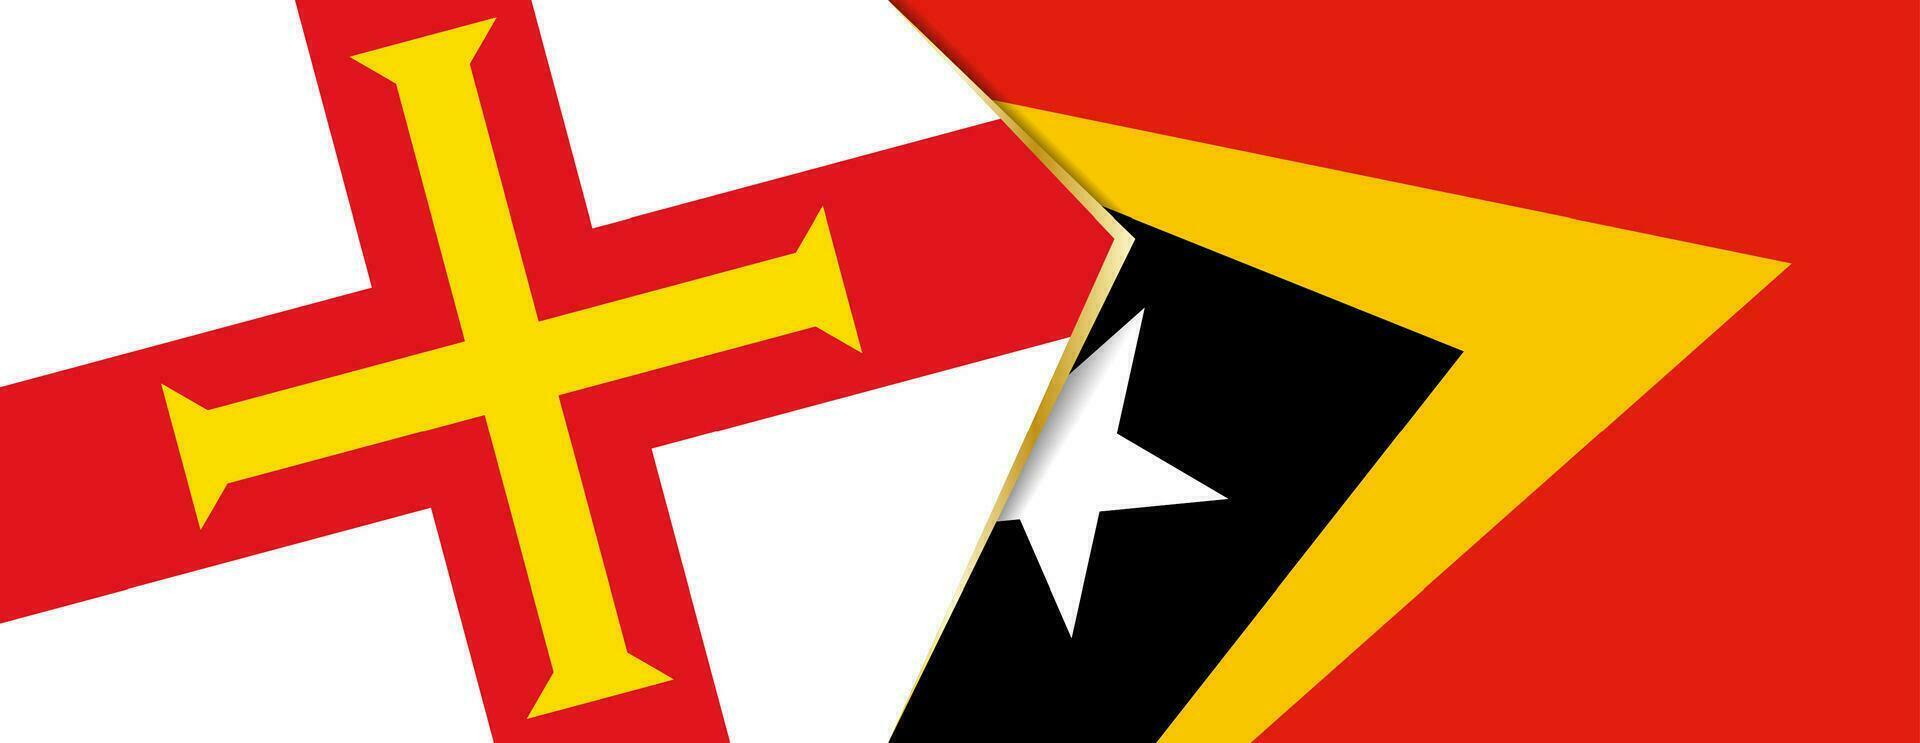 guernsey y este Timor banderas, dos vector banderas